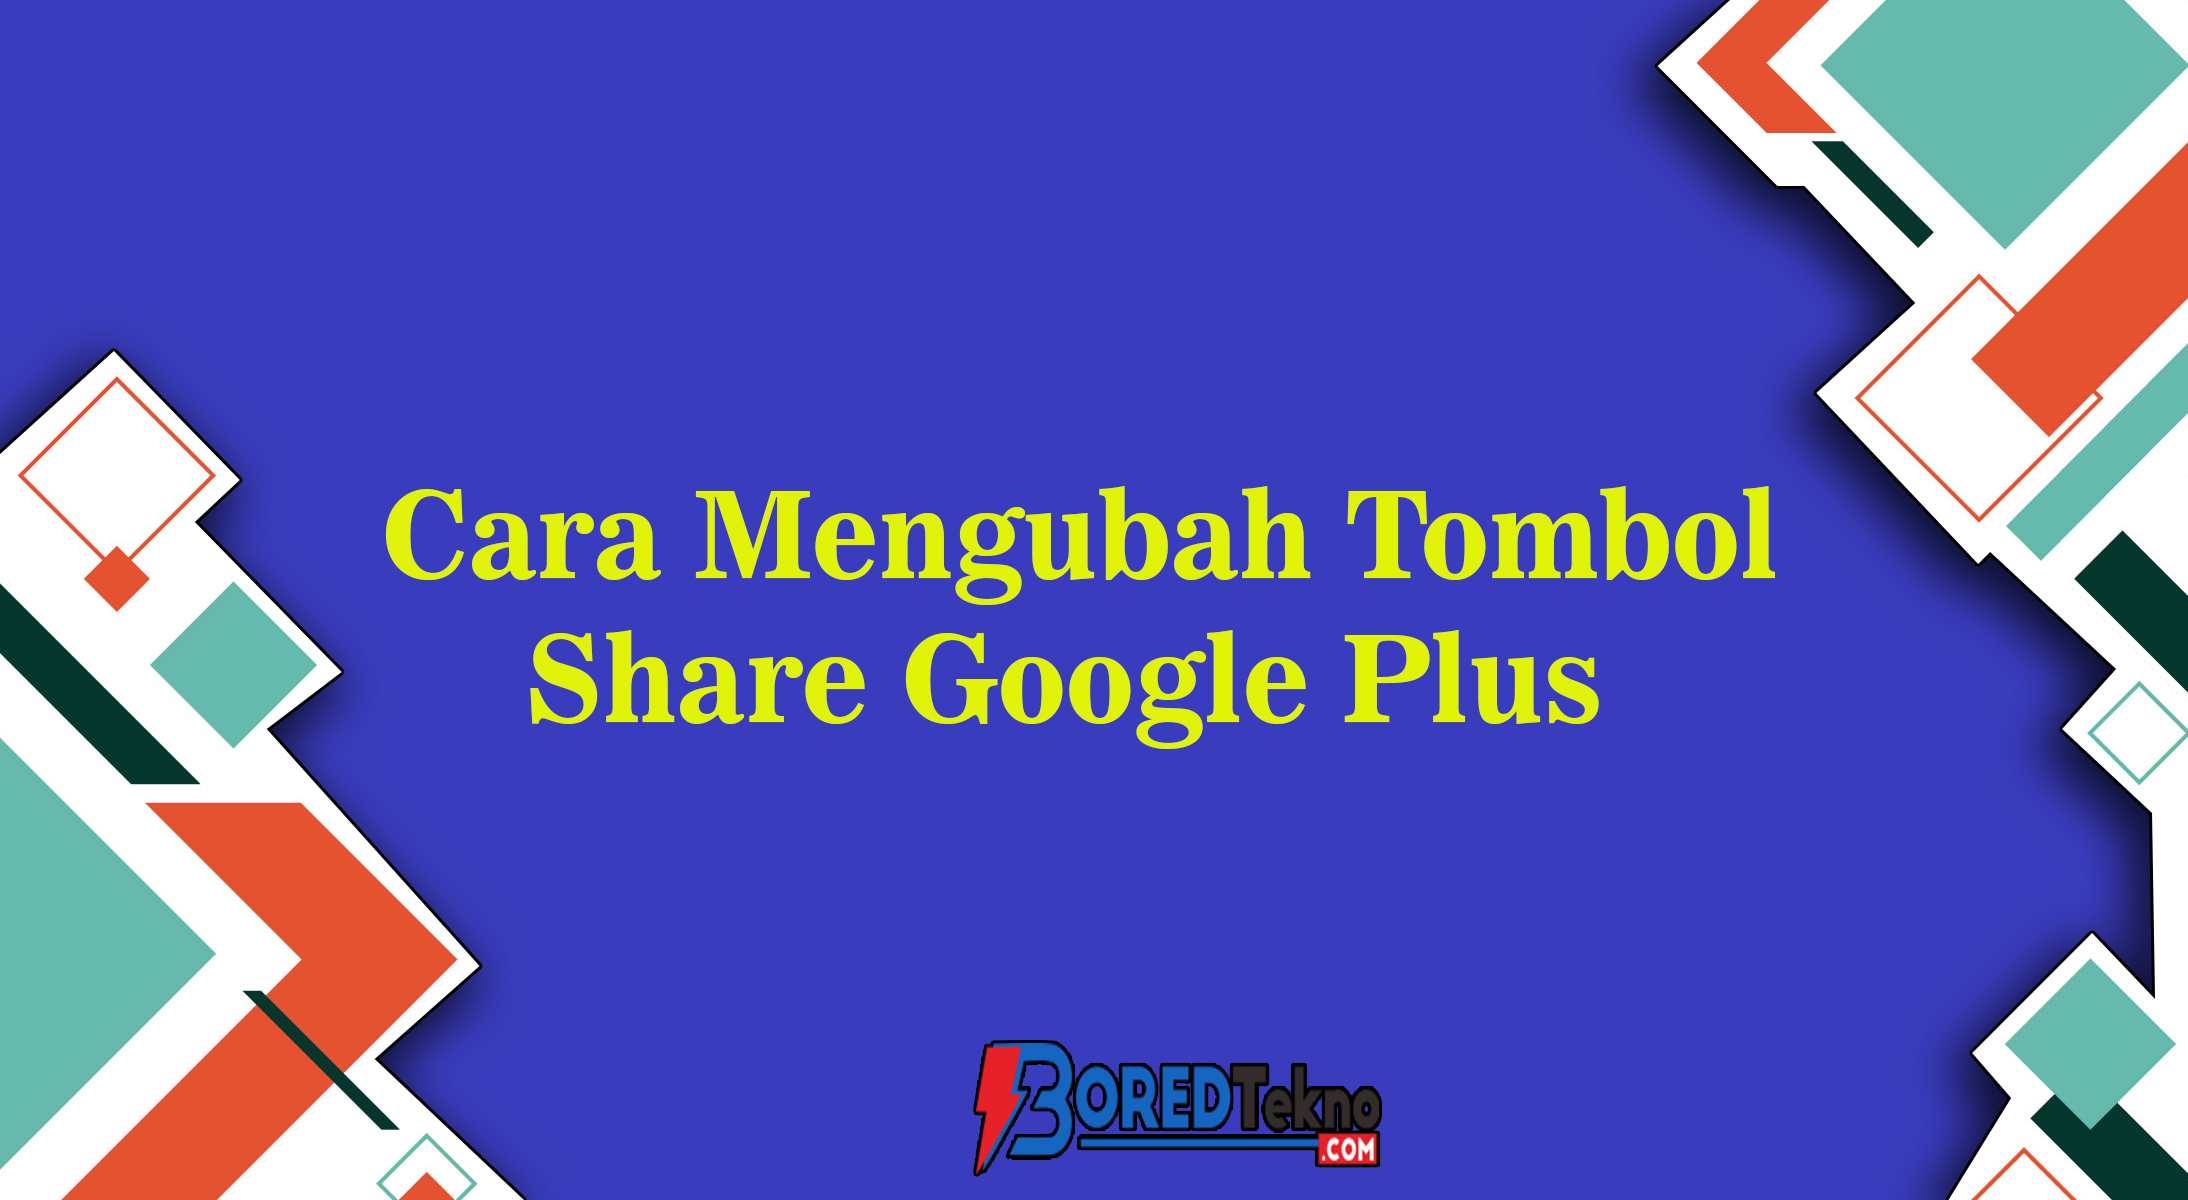 Cara Mengubah Tombol Share Google Plus